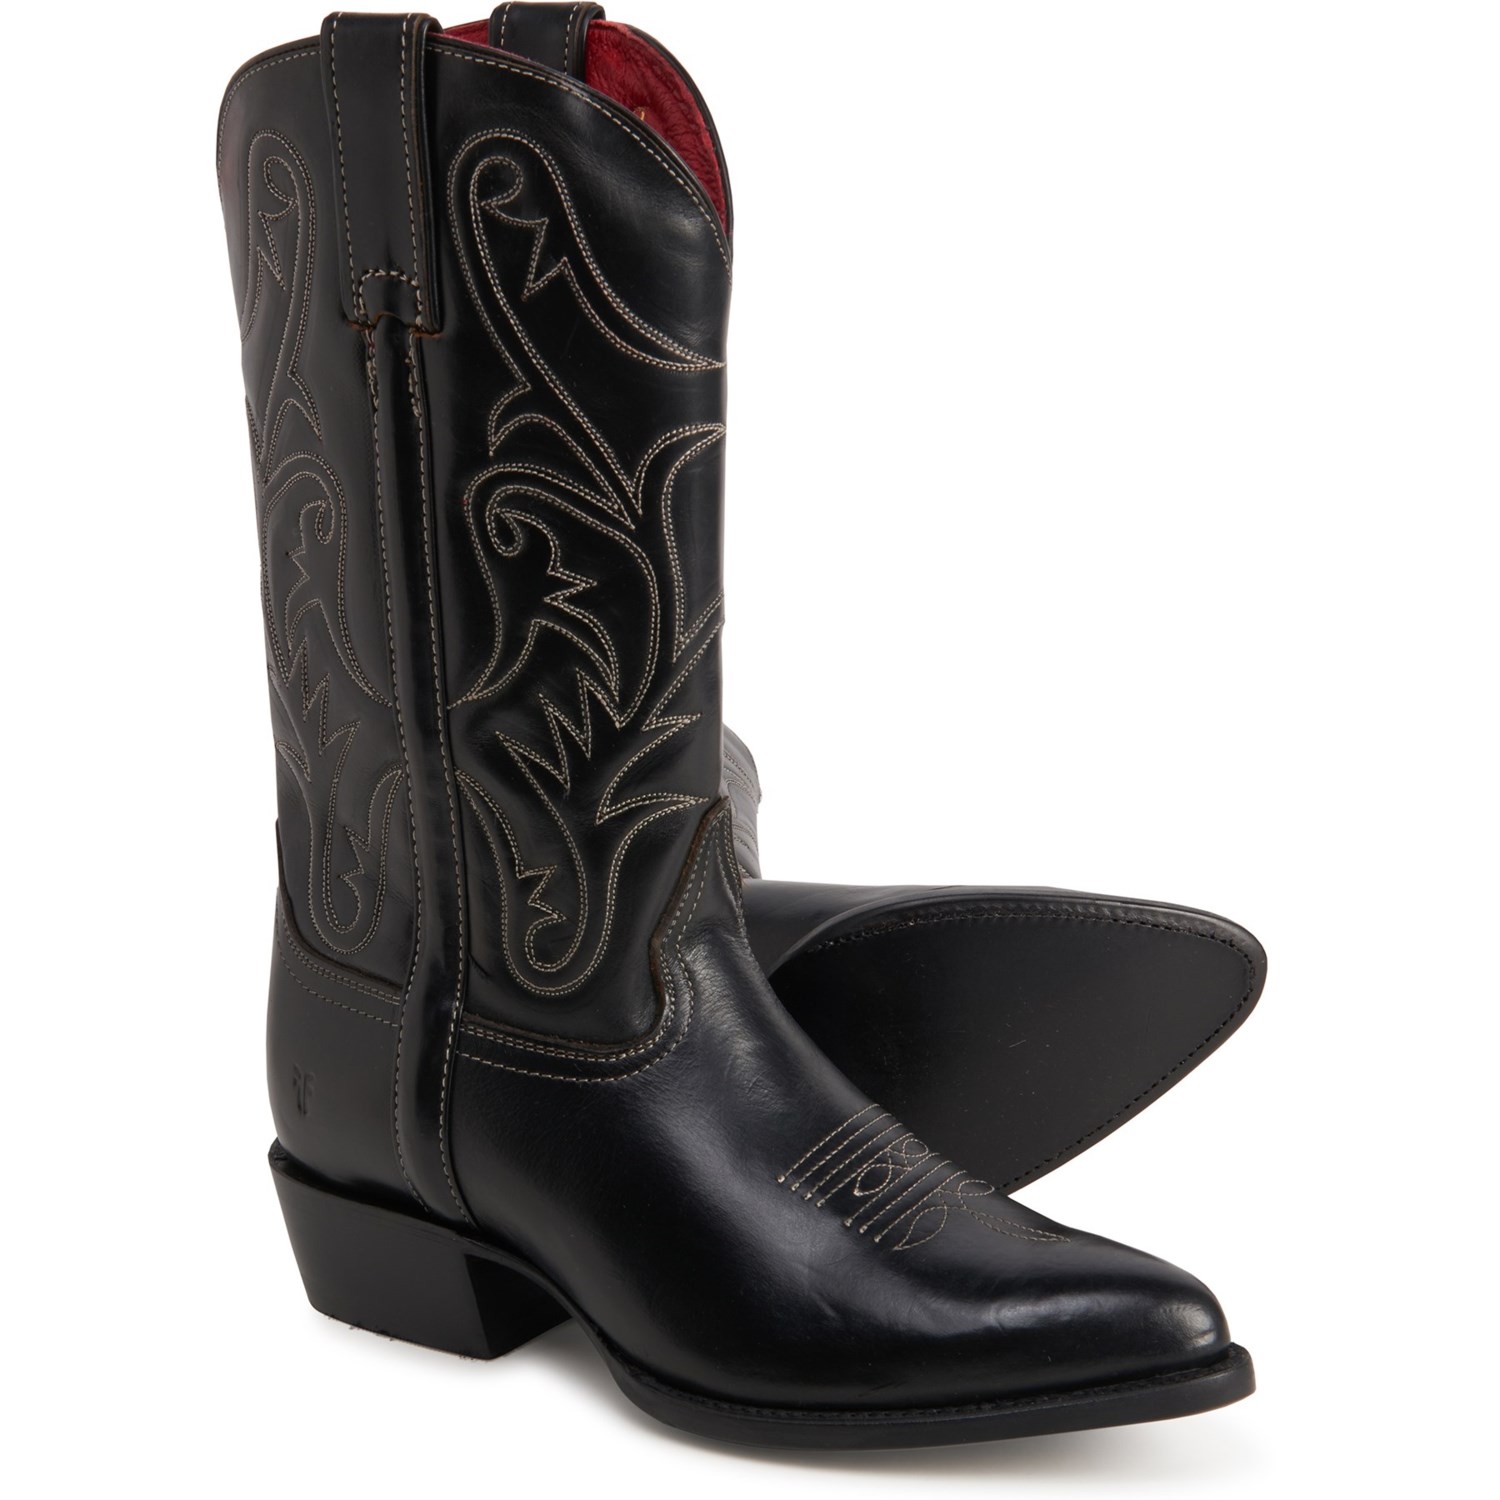 frye western boots